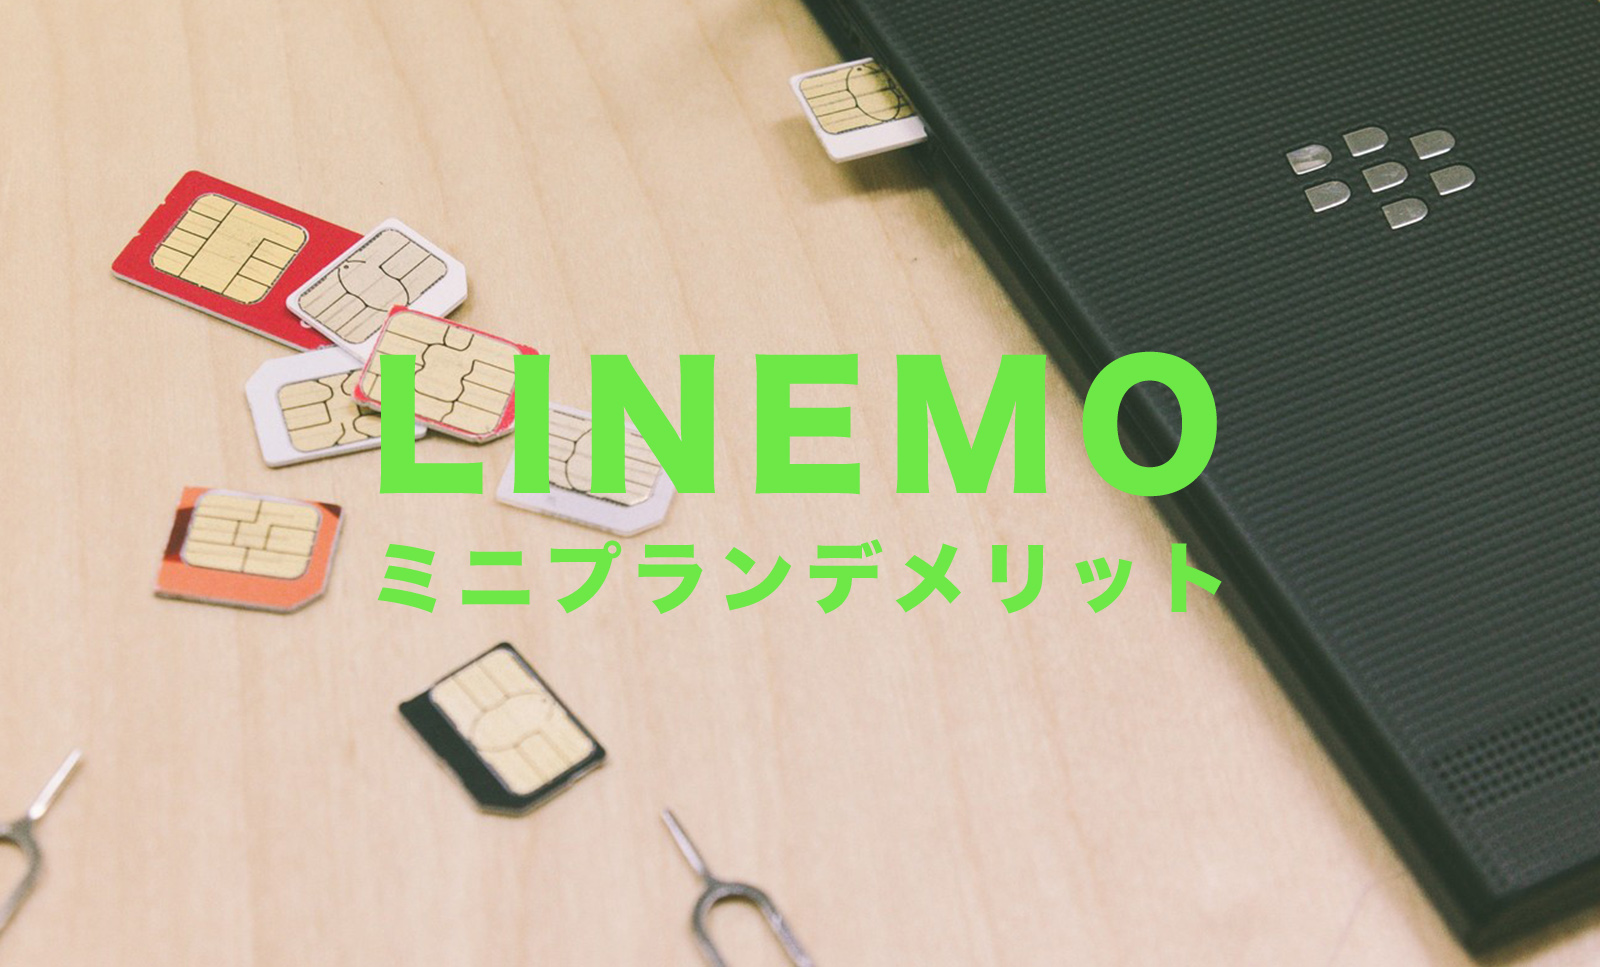 LINEMO(ラインモ)のミニプランのデメリット&メリットを解説のサムネイル画像